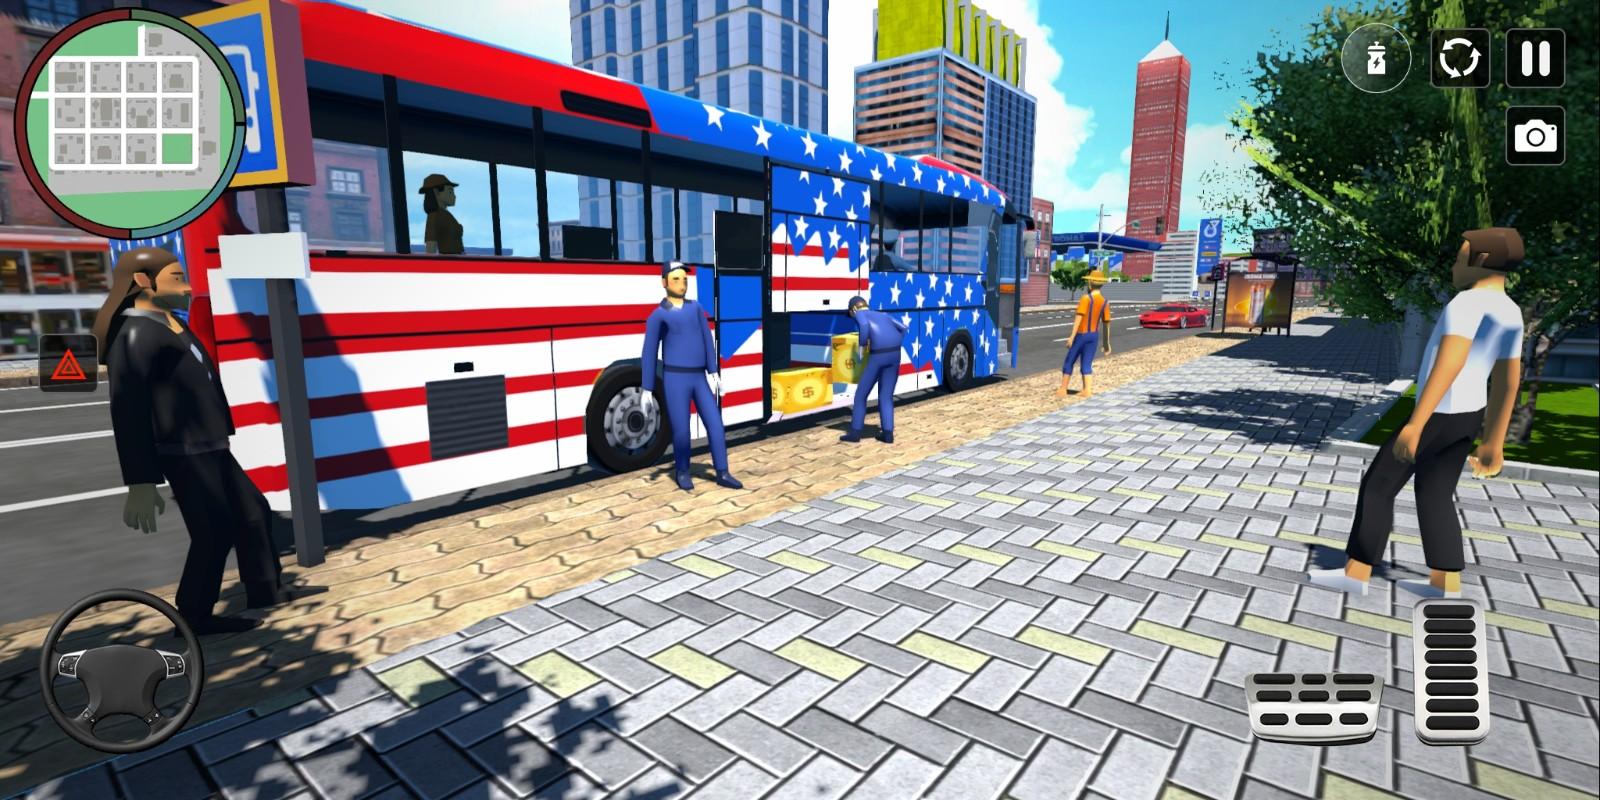 巴士模拟器终极骑行完整版